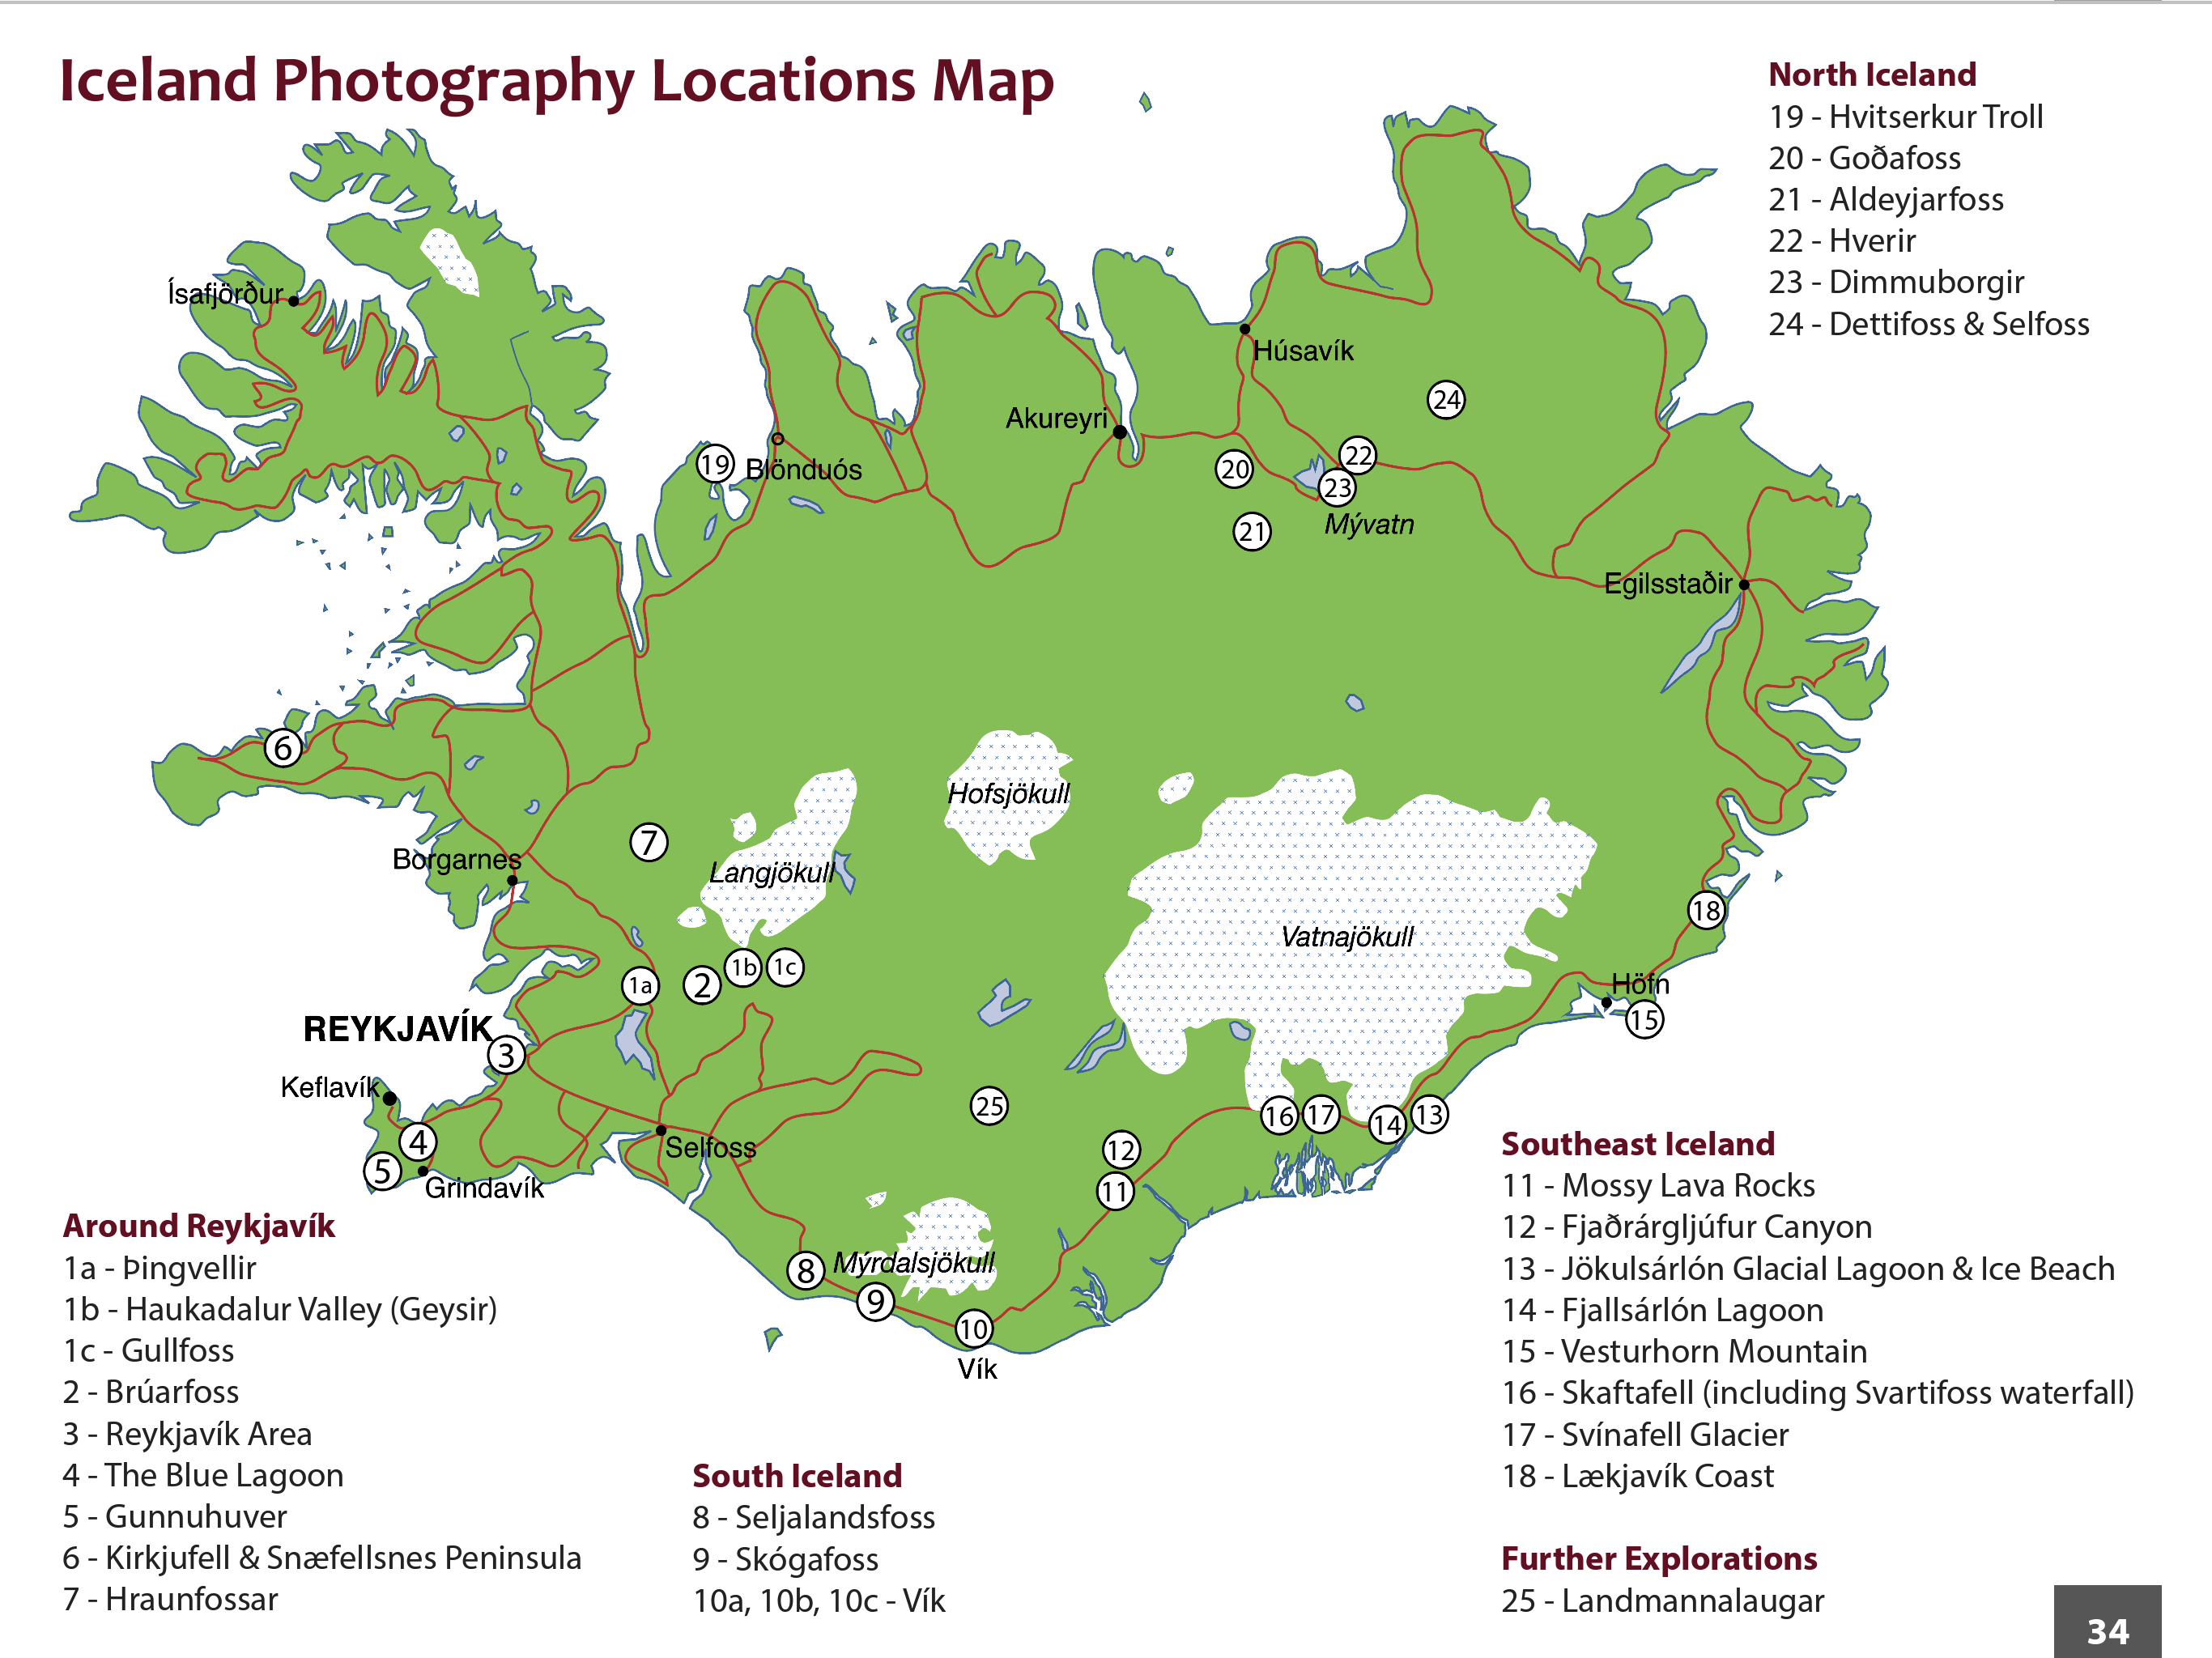 Photographic Locations Map - courtesy of Marino and Coscorrosa